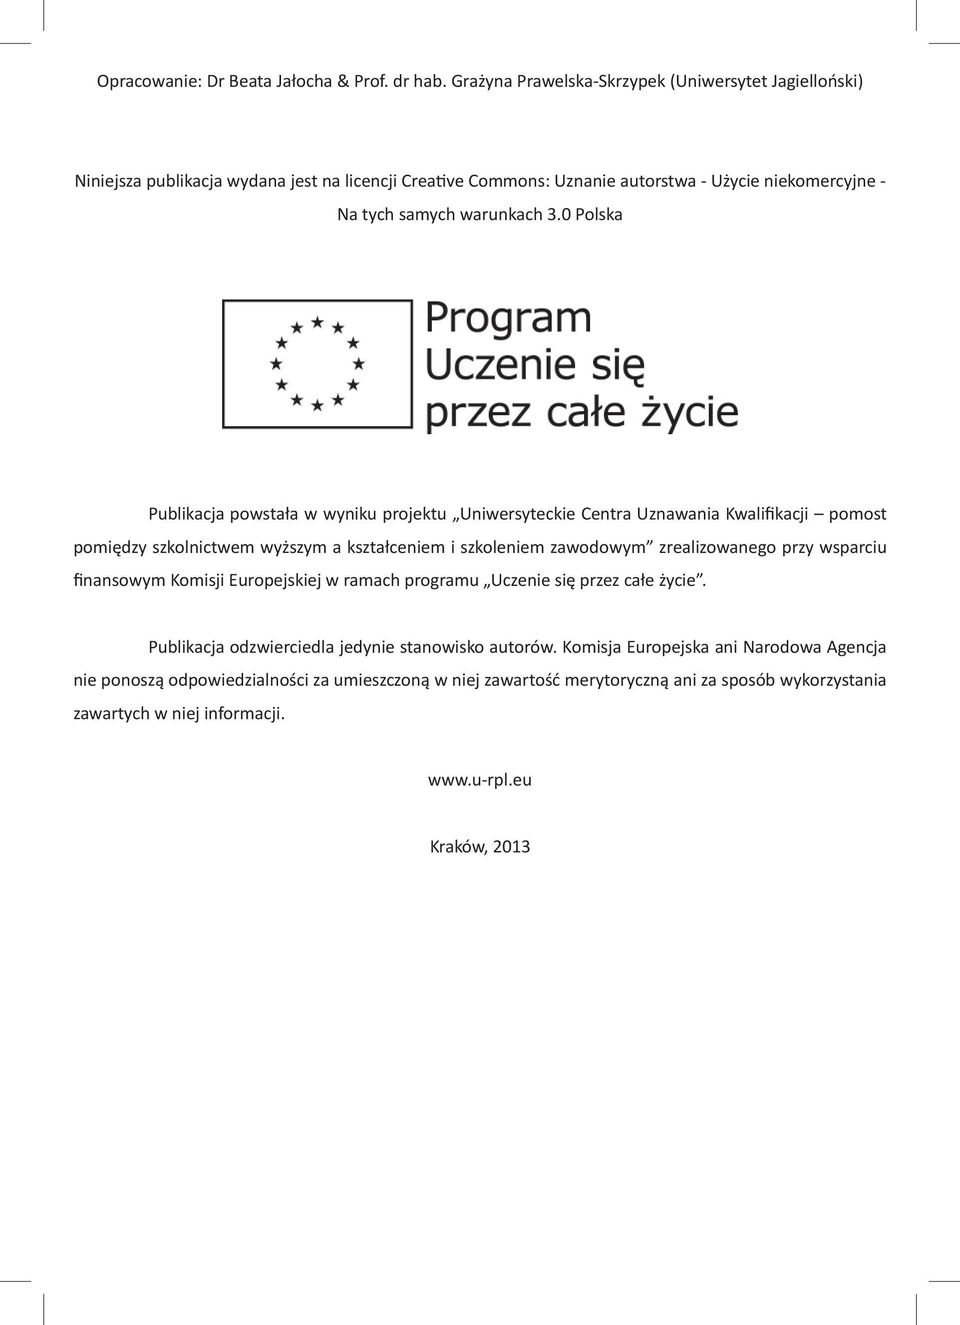 0 Polska Publikacja powstała w wyniku projektu Uniwersyteckie Centra Uznawania Kwalifikacji pomost pomiędzy szkolnictwem wyższym a kształceniem i szkoleniem zawodowym zrealizowanego przy